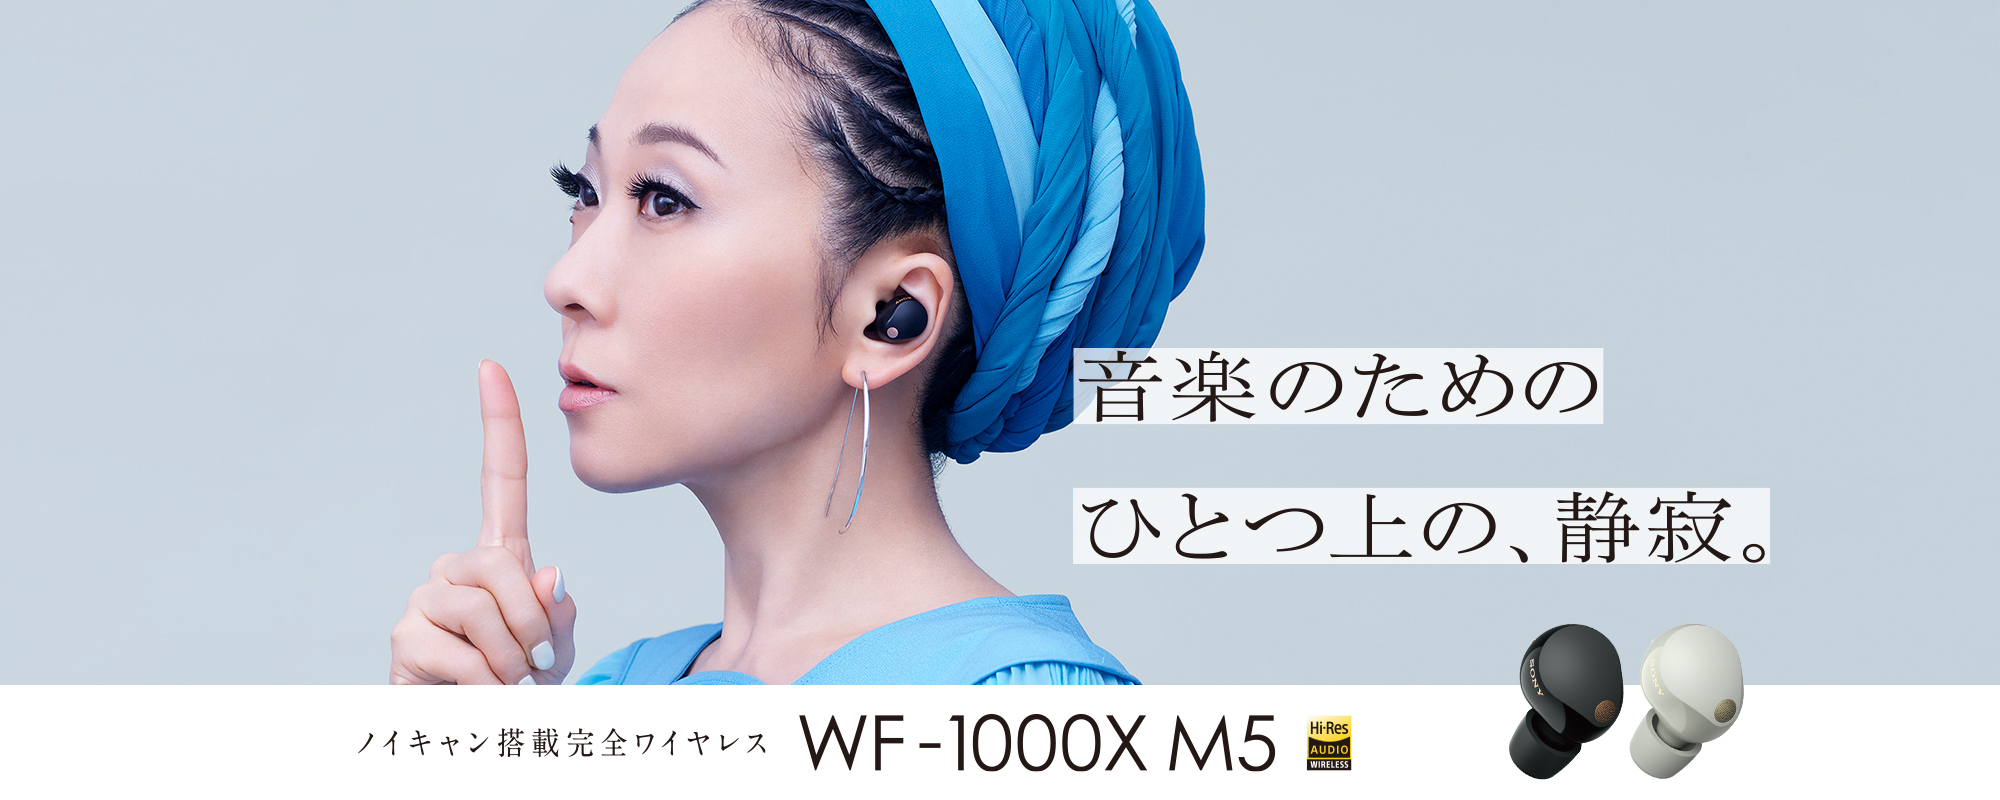 WF-1000XM5×MISIA スペシャルコンテンツ | ヘッドホン | ソニー